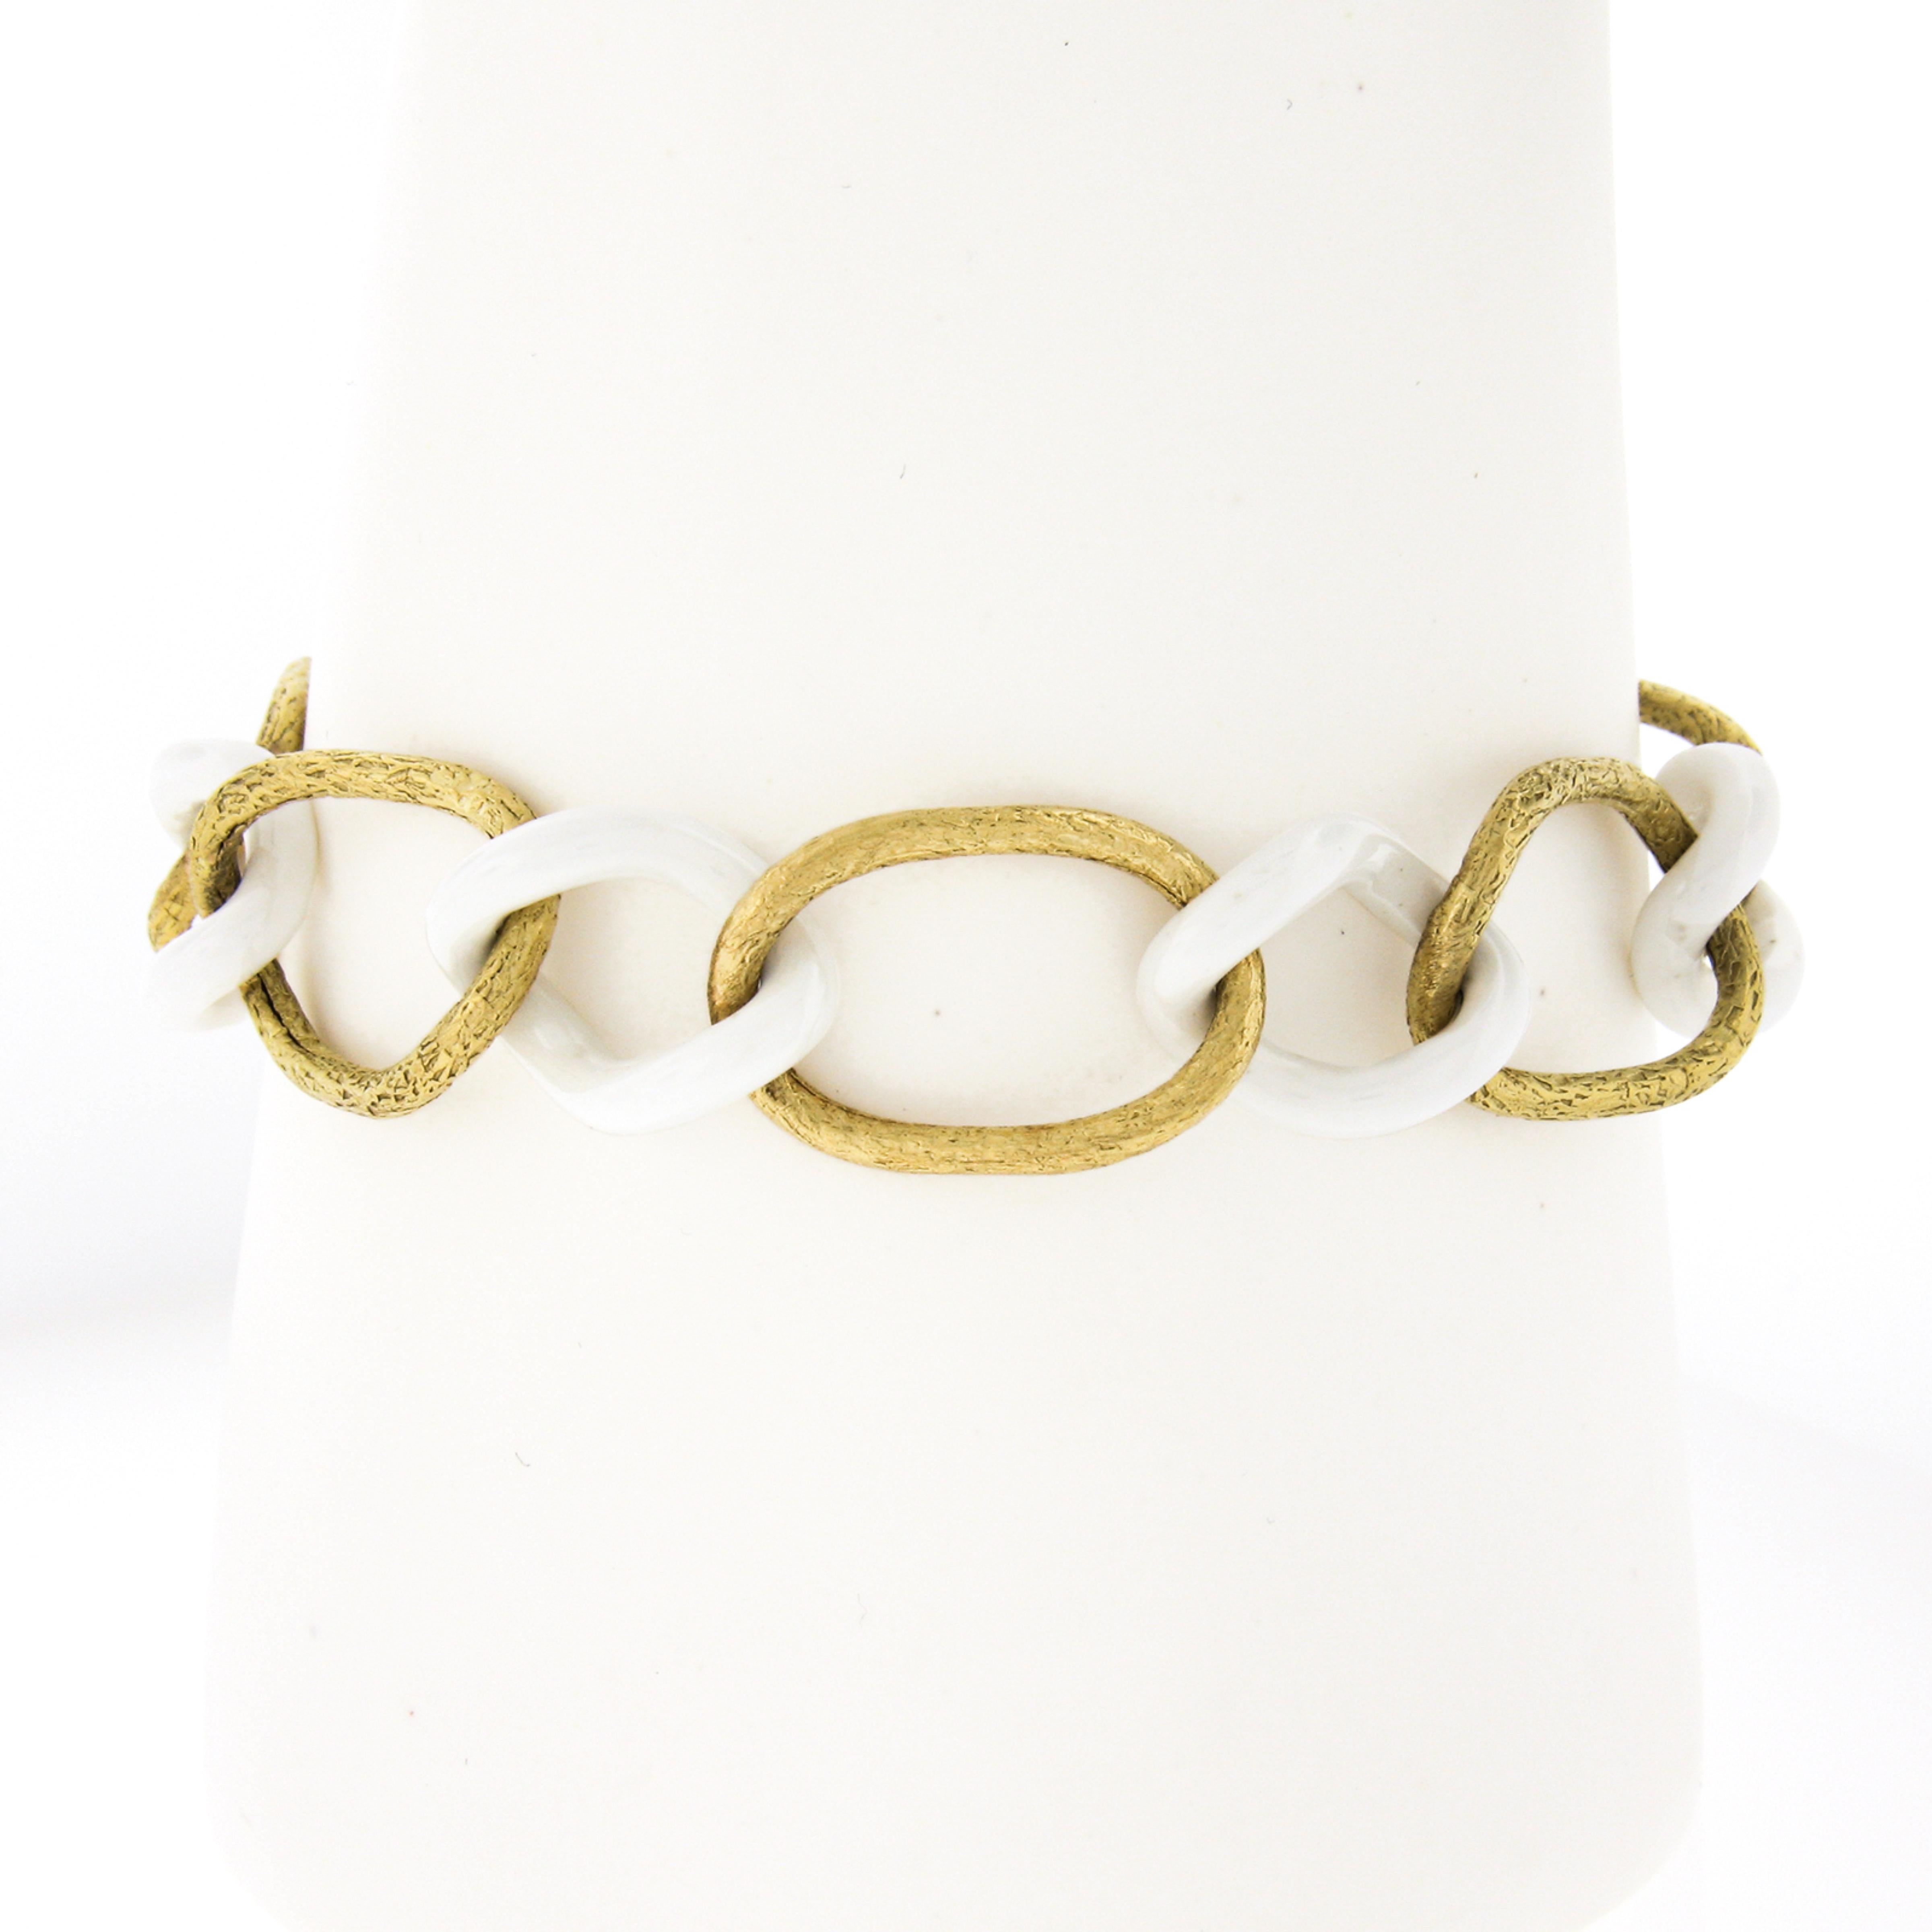 Ce bracelet à maillons de Giovanni Marchisio, au design unique et élégant, présente des maillons en or jaune 18 carats et en céramique blanche qui s'alternent. Les maillons ovales en or ont une finition texturée étonnante qui ressemble à la finition